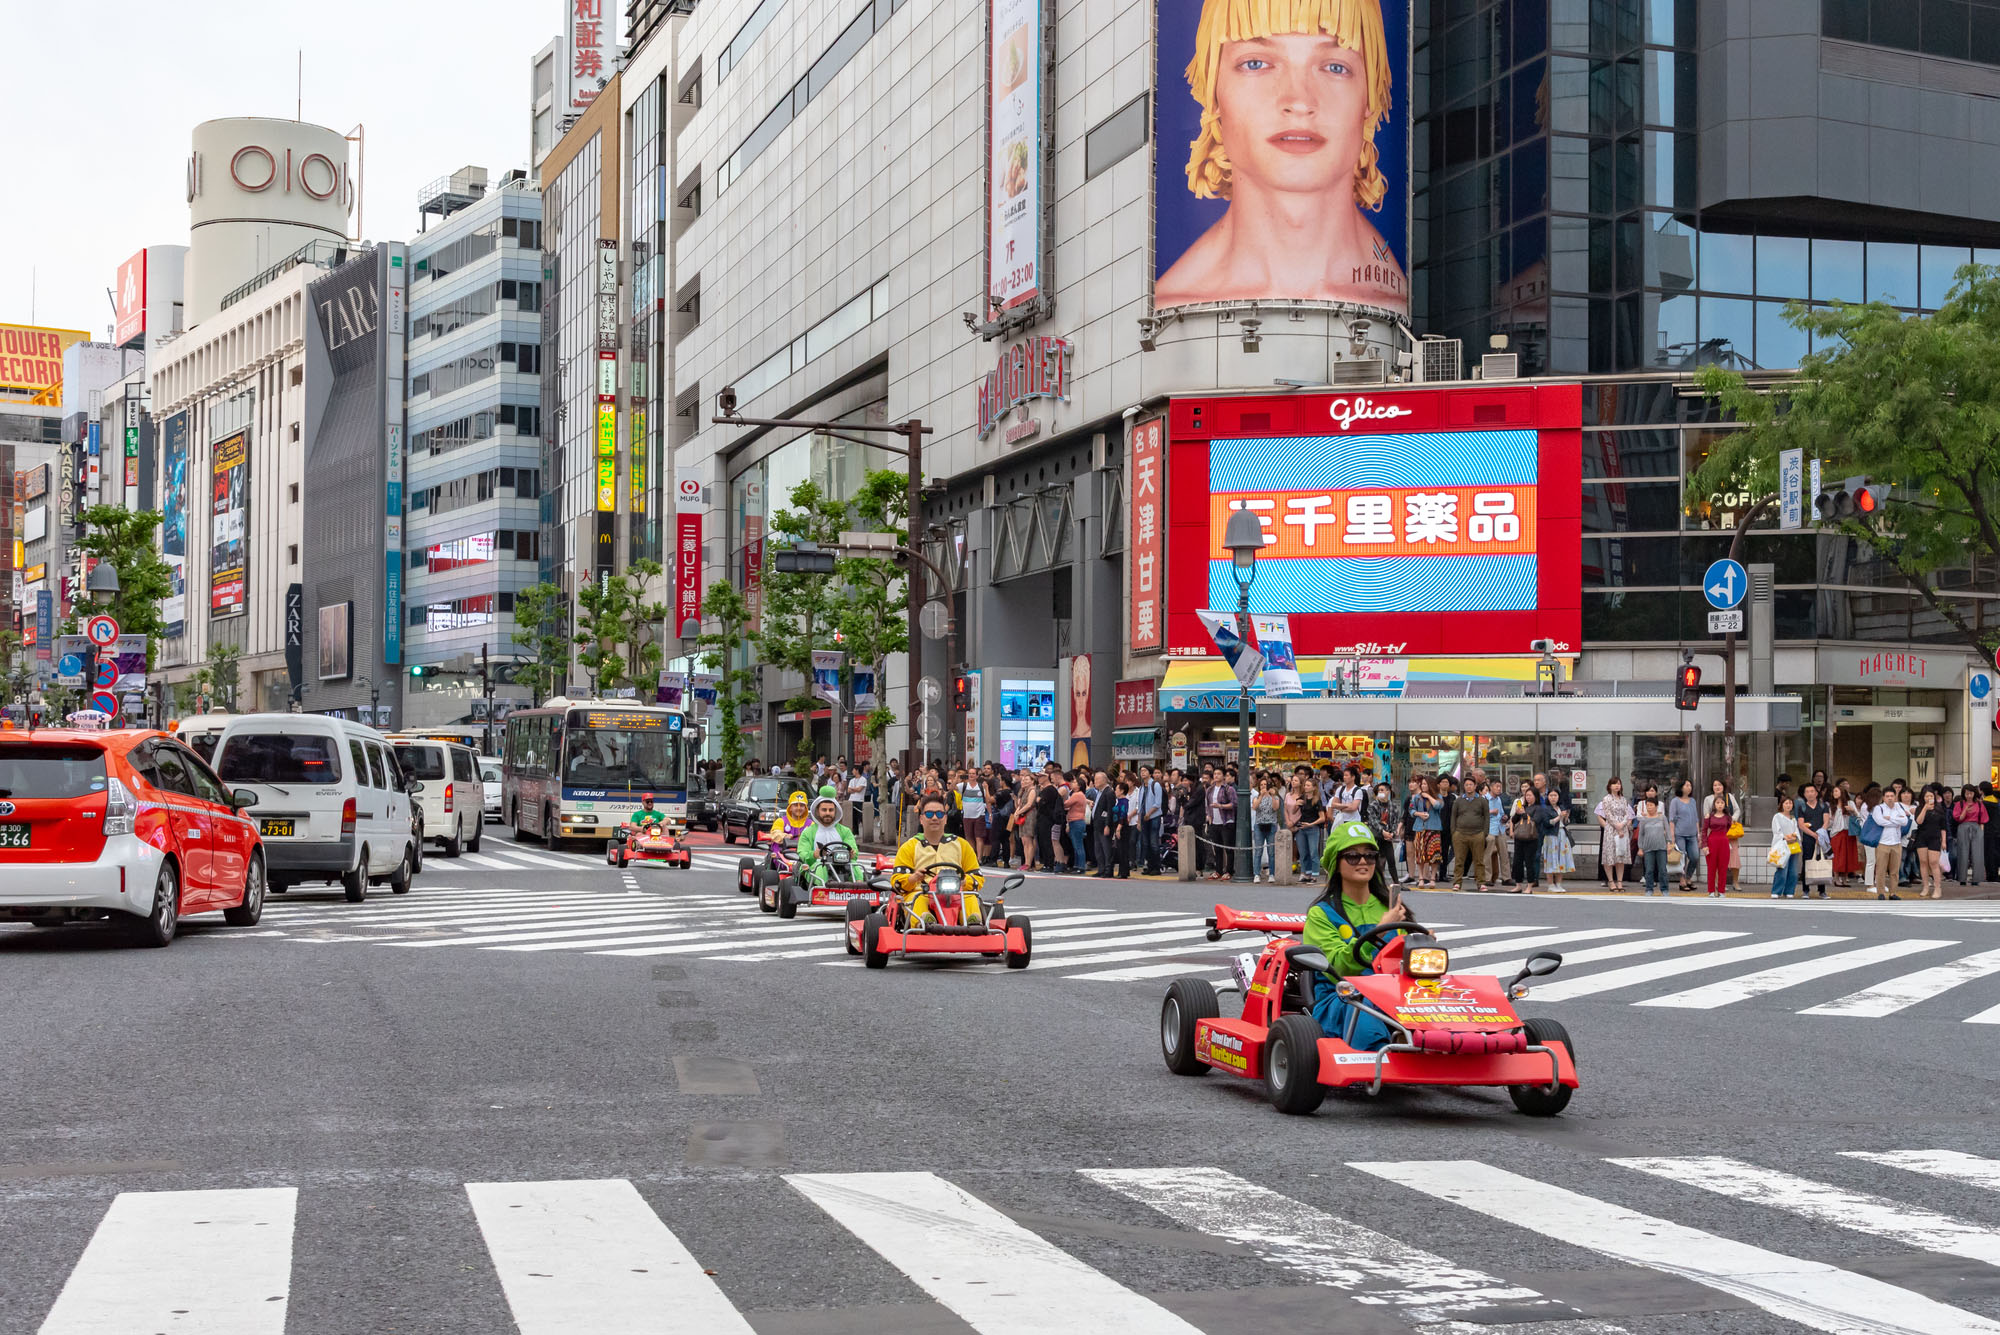 Die Gokart-Fahrer im Mario-Stil fuhren stets über die grosse Kreuzung in Shibuya.